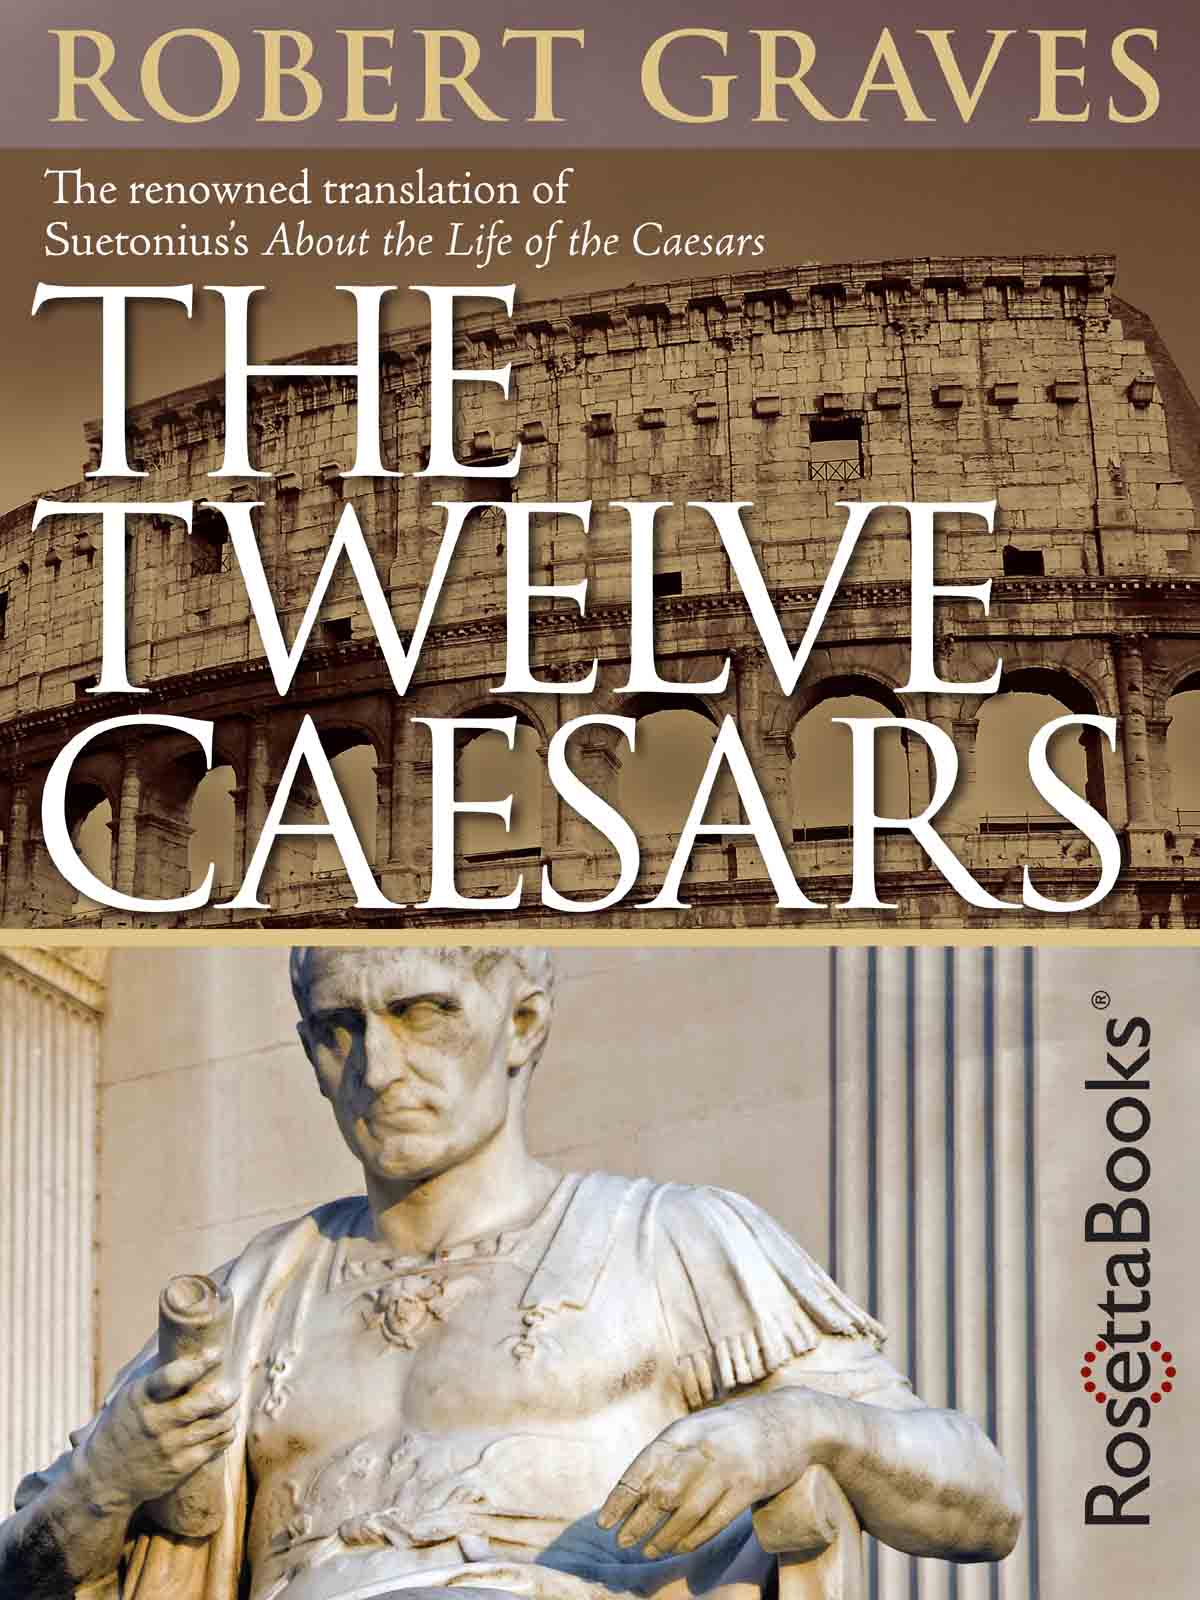 The Twelve Caesars Gaius Suetonius Tranquillus translated by Robert Graves - photo 1